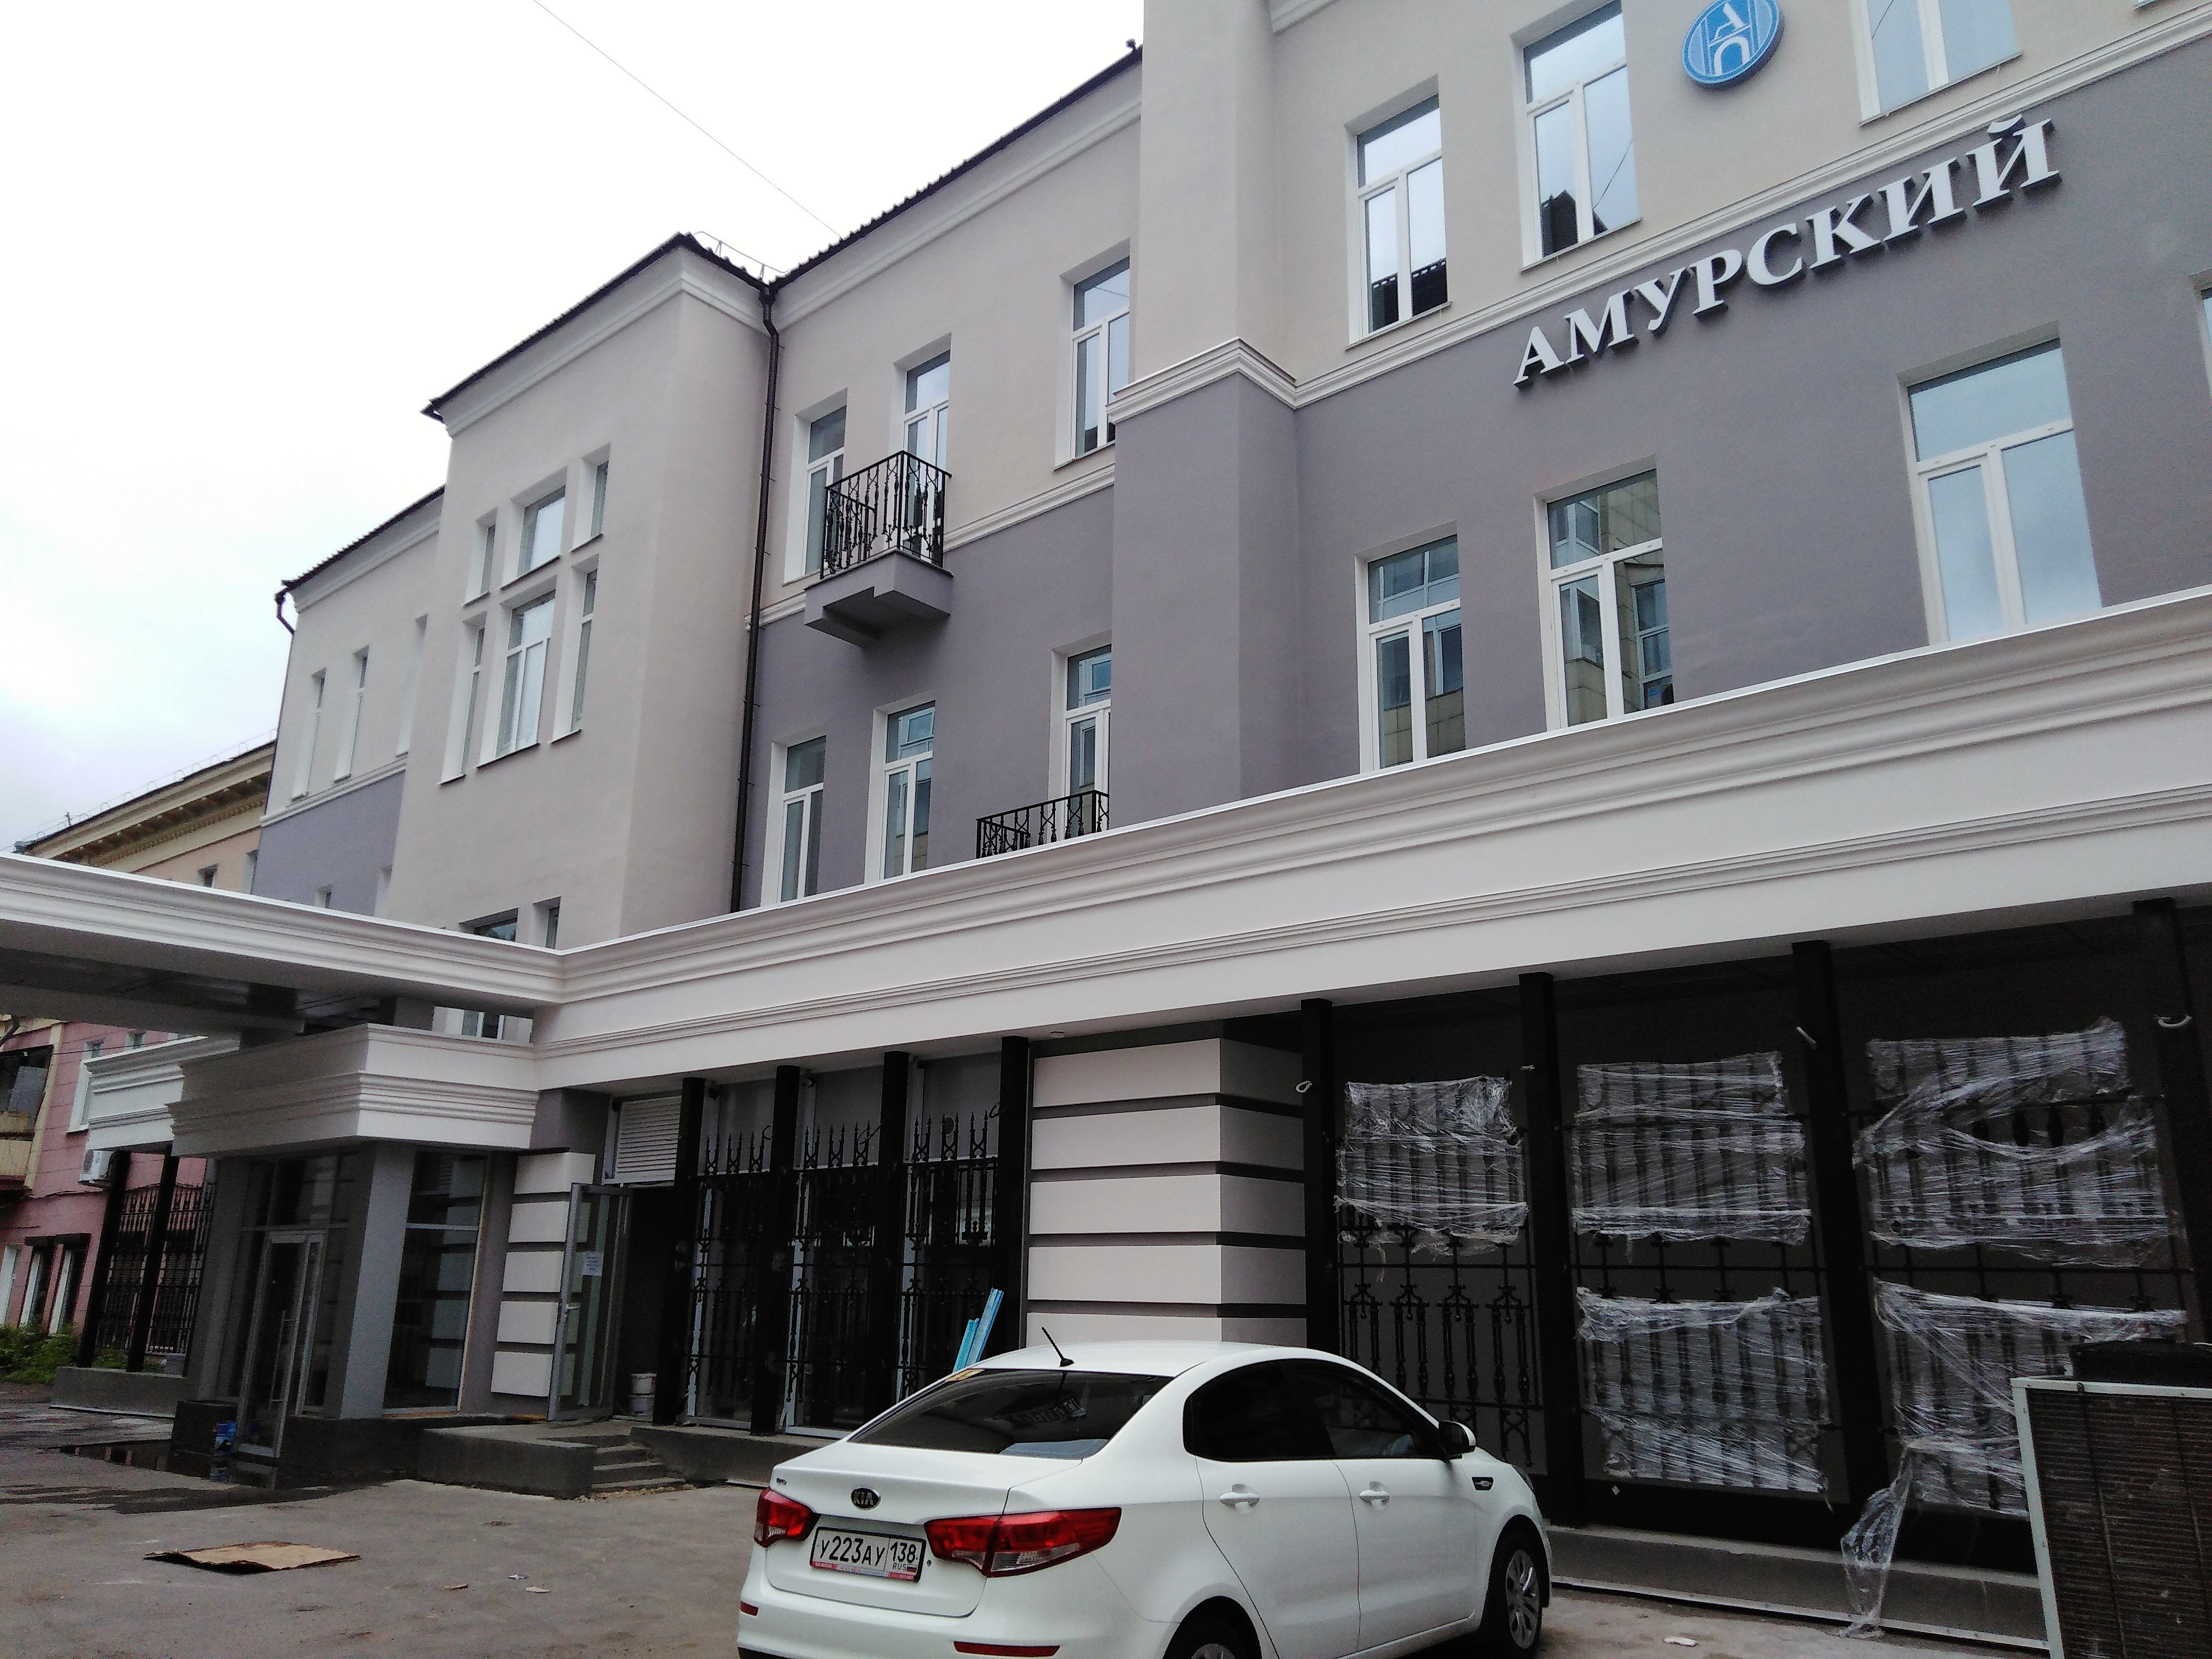 Мини-отель, расположенный по адресу: г.Иркутск, ул. Ленина, 34.